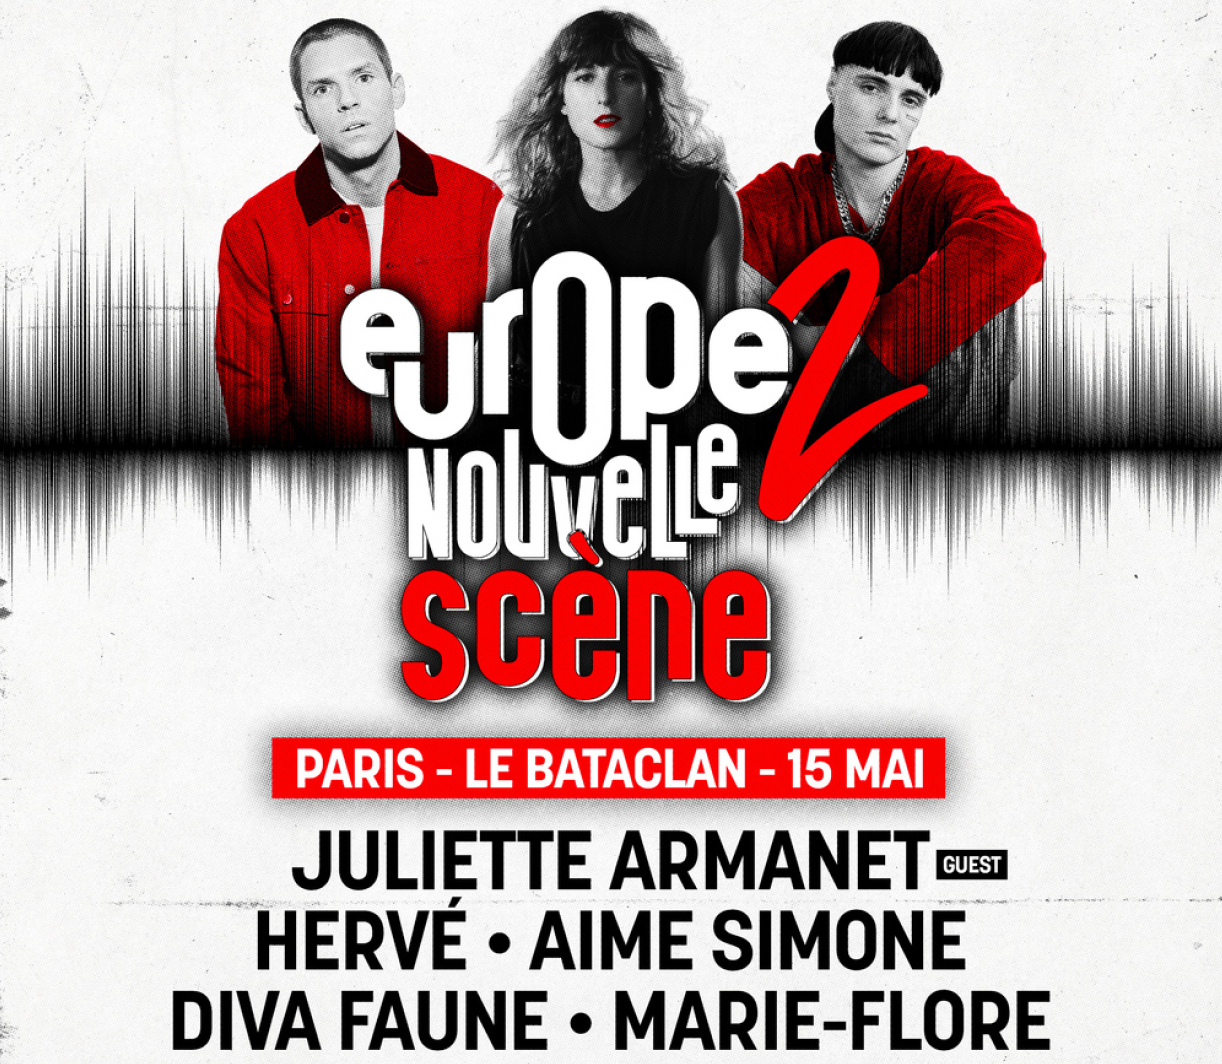 Juliette Armanet, marraine de la tournée "Europe 2 Nouvelle Scène"